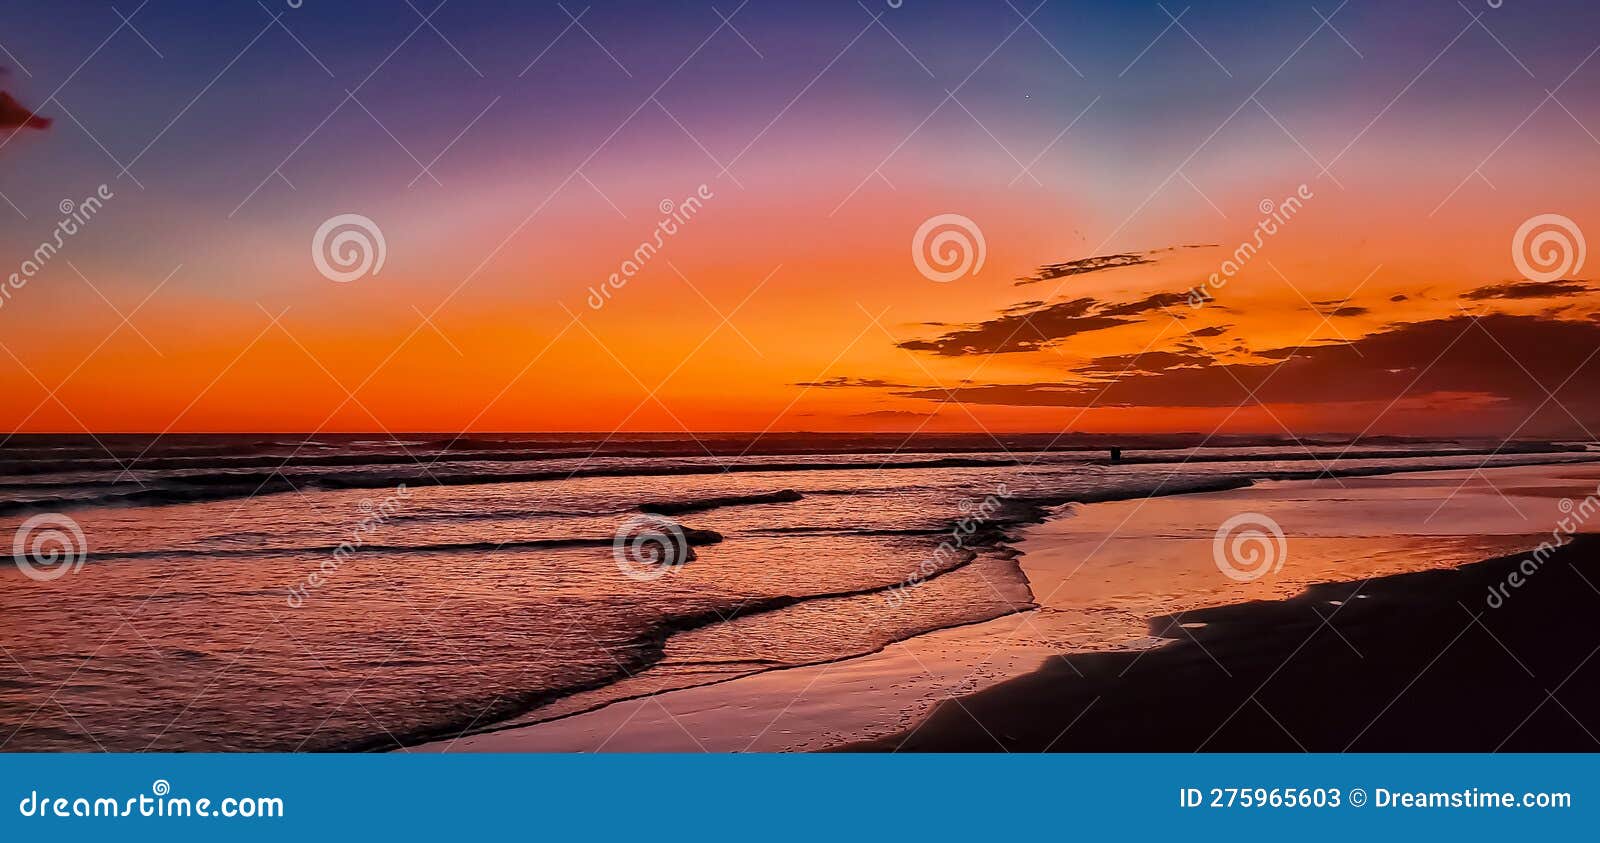 hermosa puesta de sol sunset beach el cuco san miguel